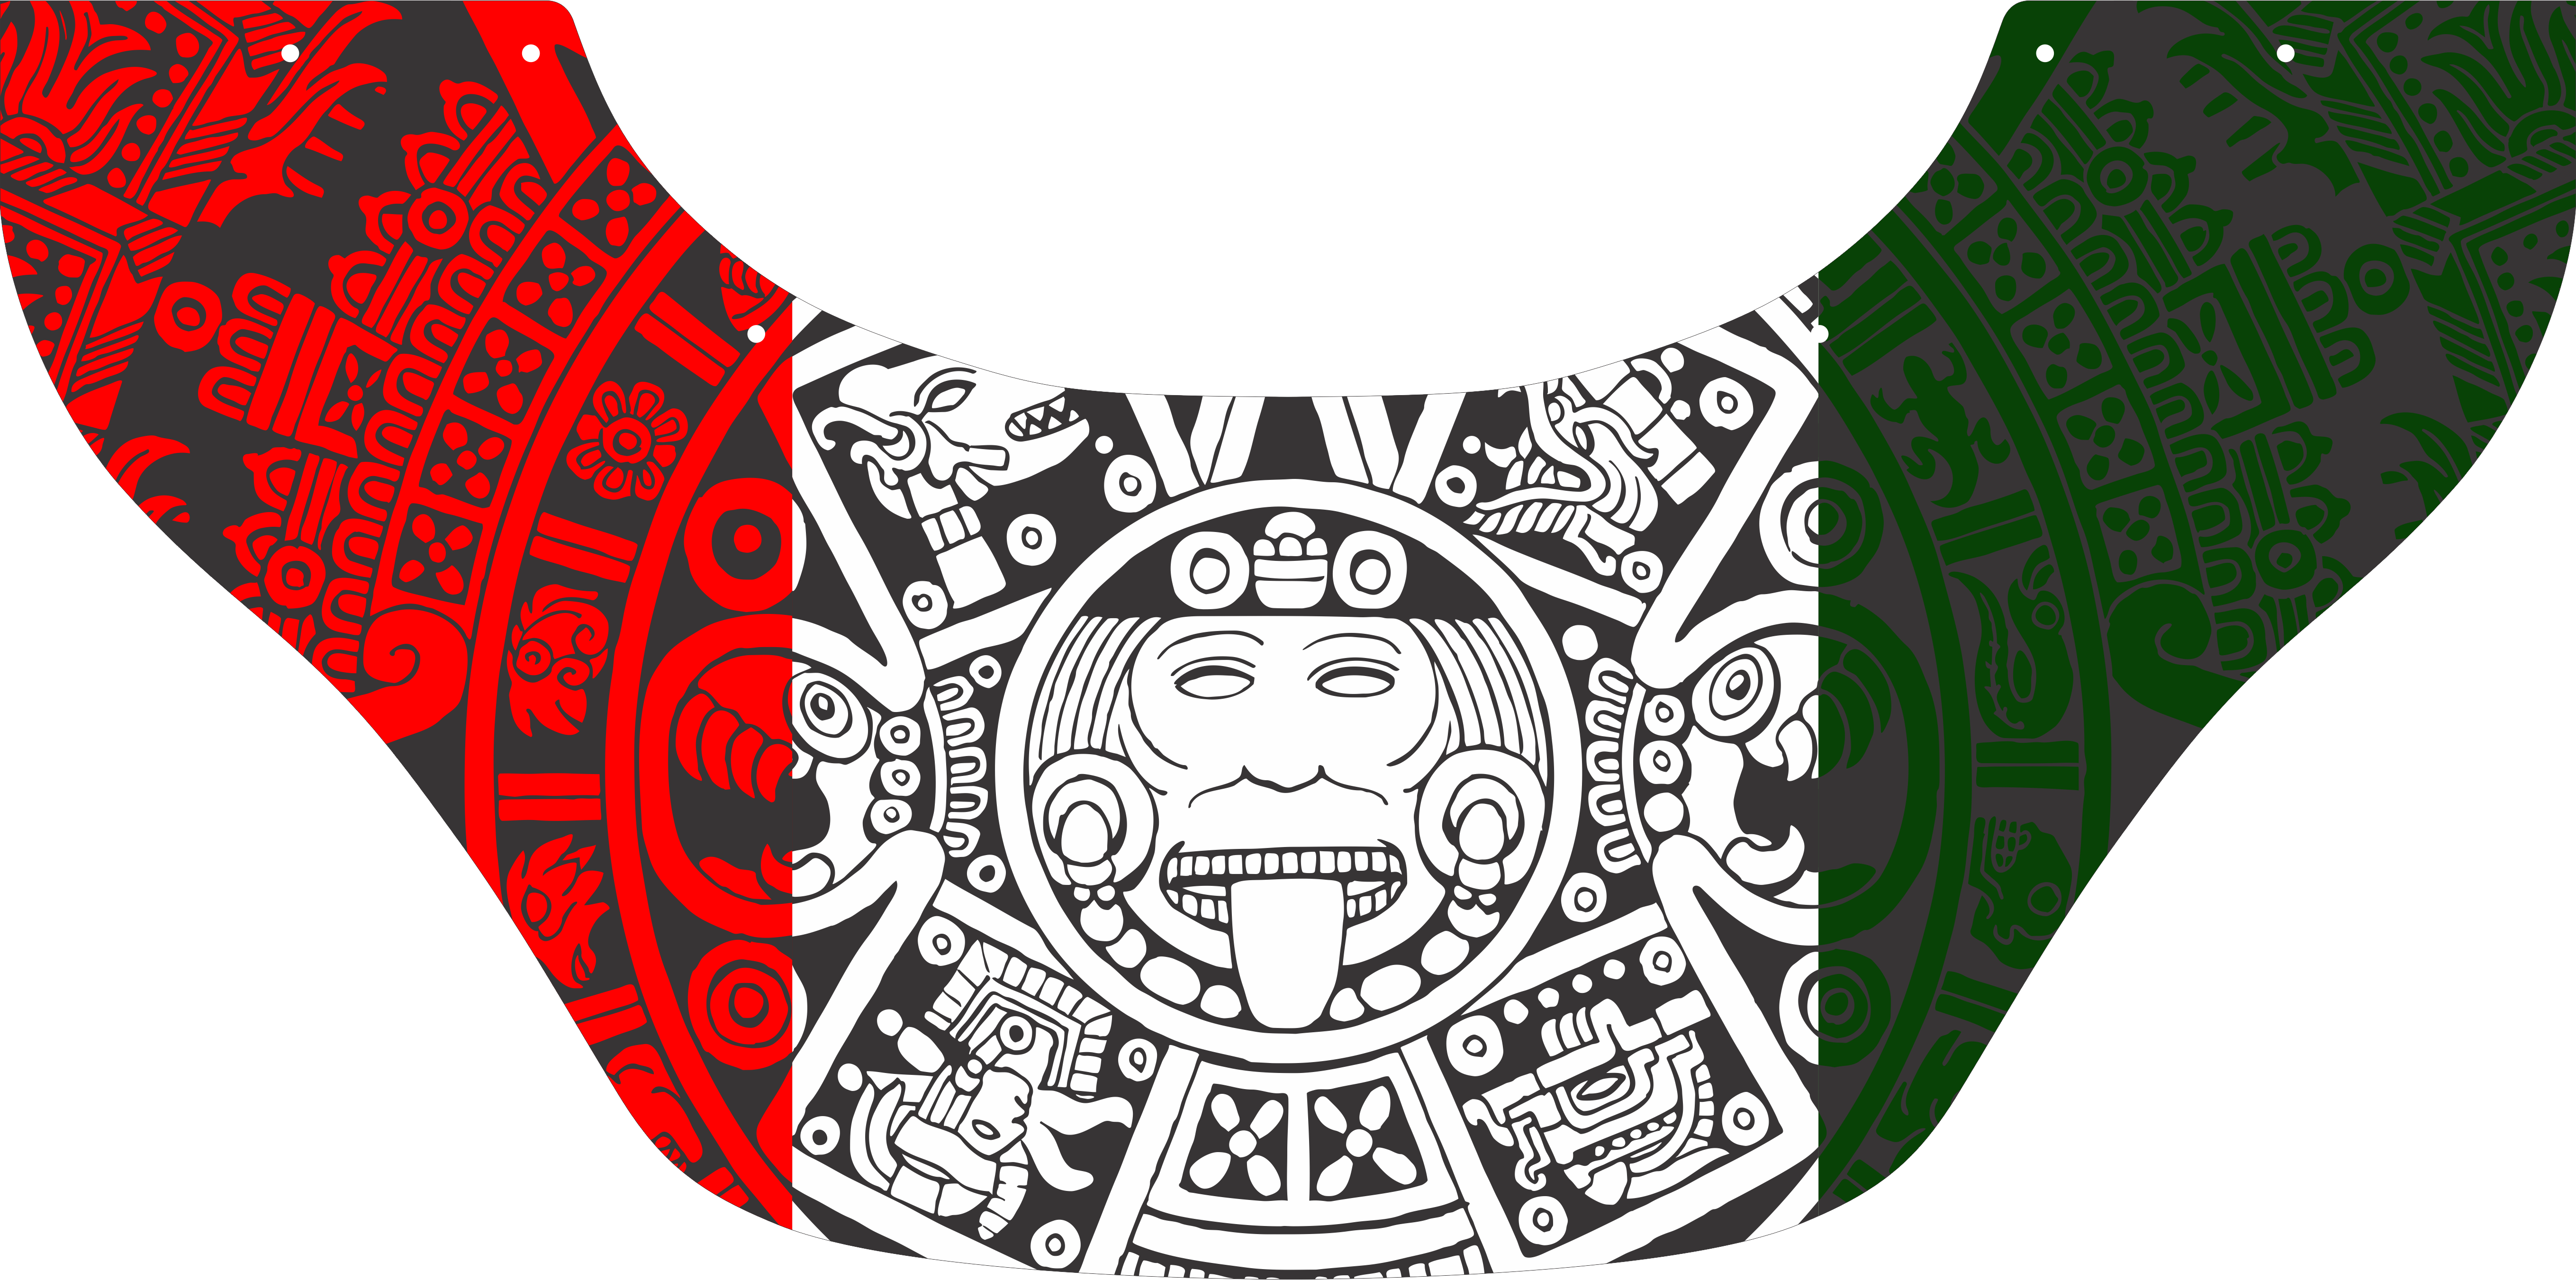 Aztec Tricolor